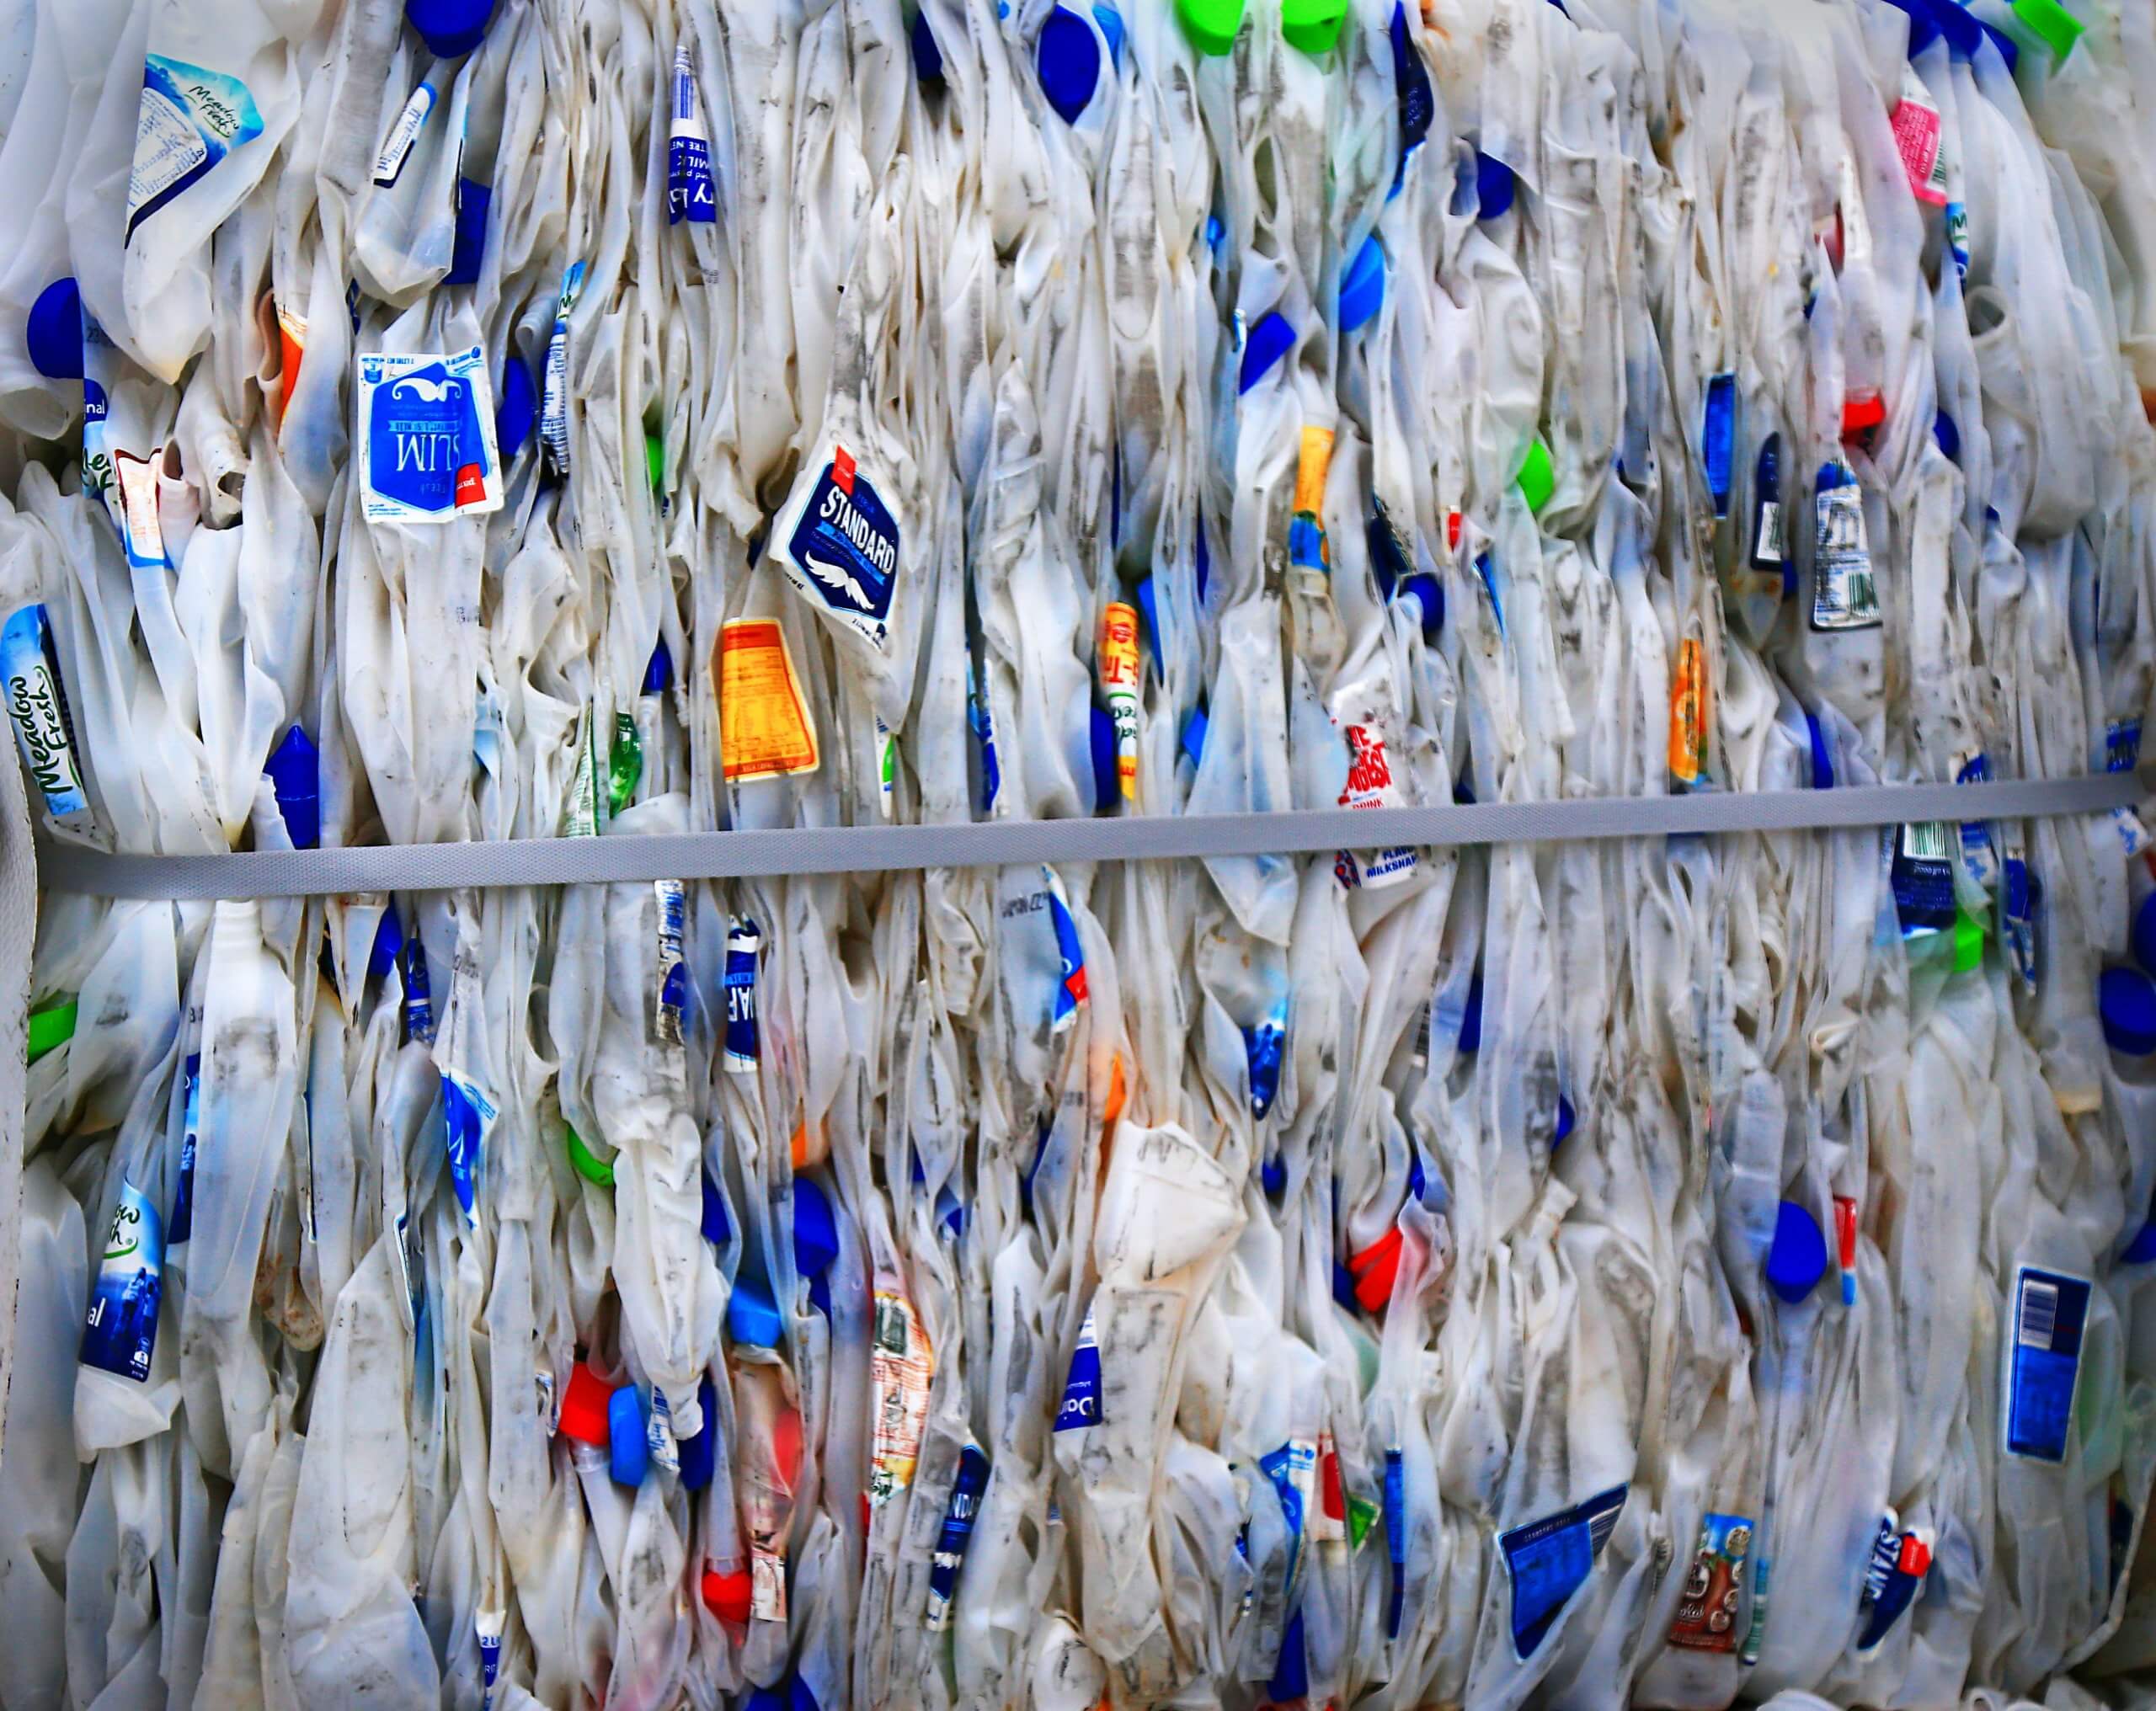 تنتج إسرائيل 1.37 مليون طن من النفايات البلاستيكية سنويًا؛ إن أحجام إعادة التدوير لدينا تقيس هذه الأرقام الضخمة. تصوير ناريتا مارتن على Unsplash